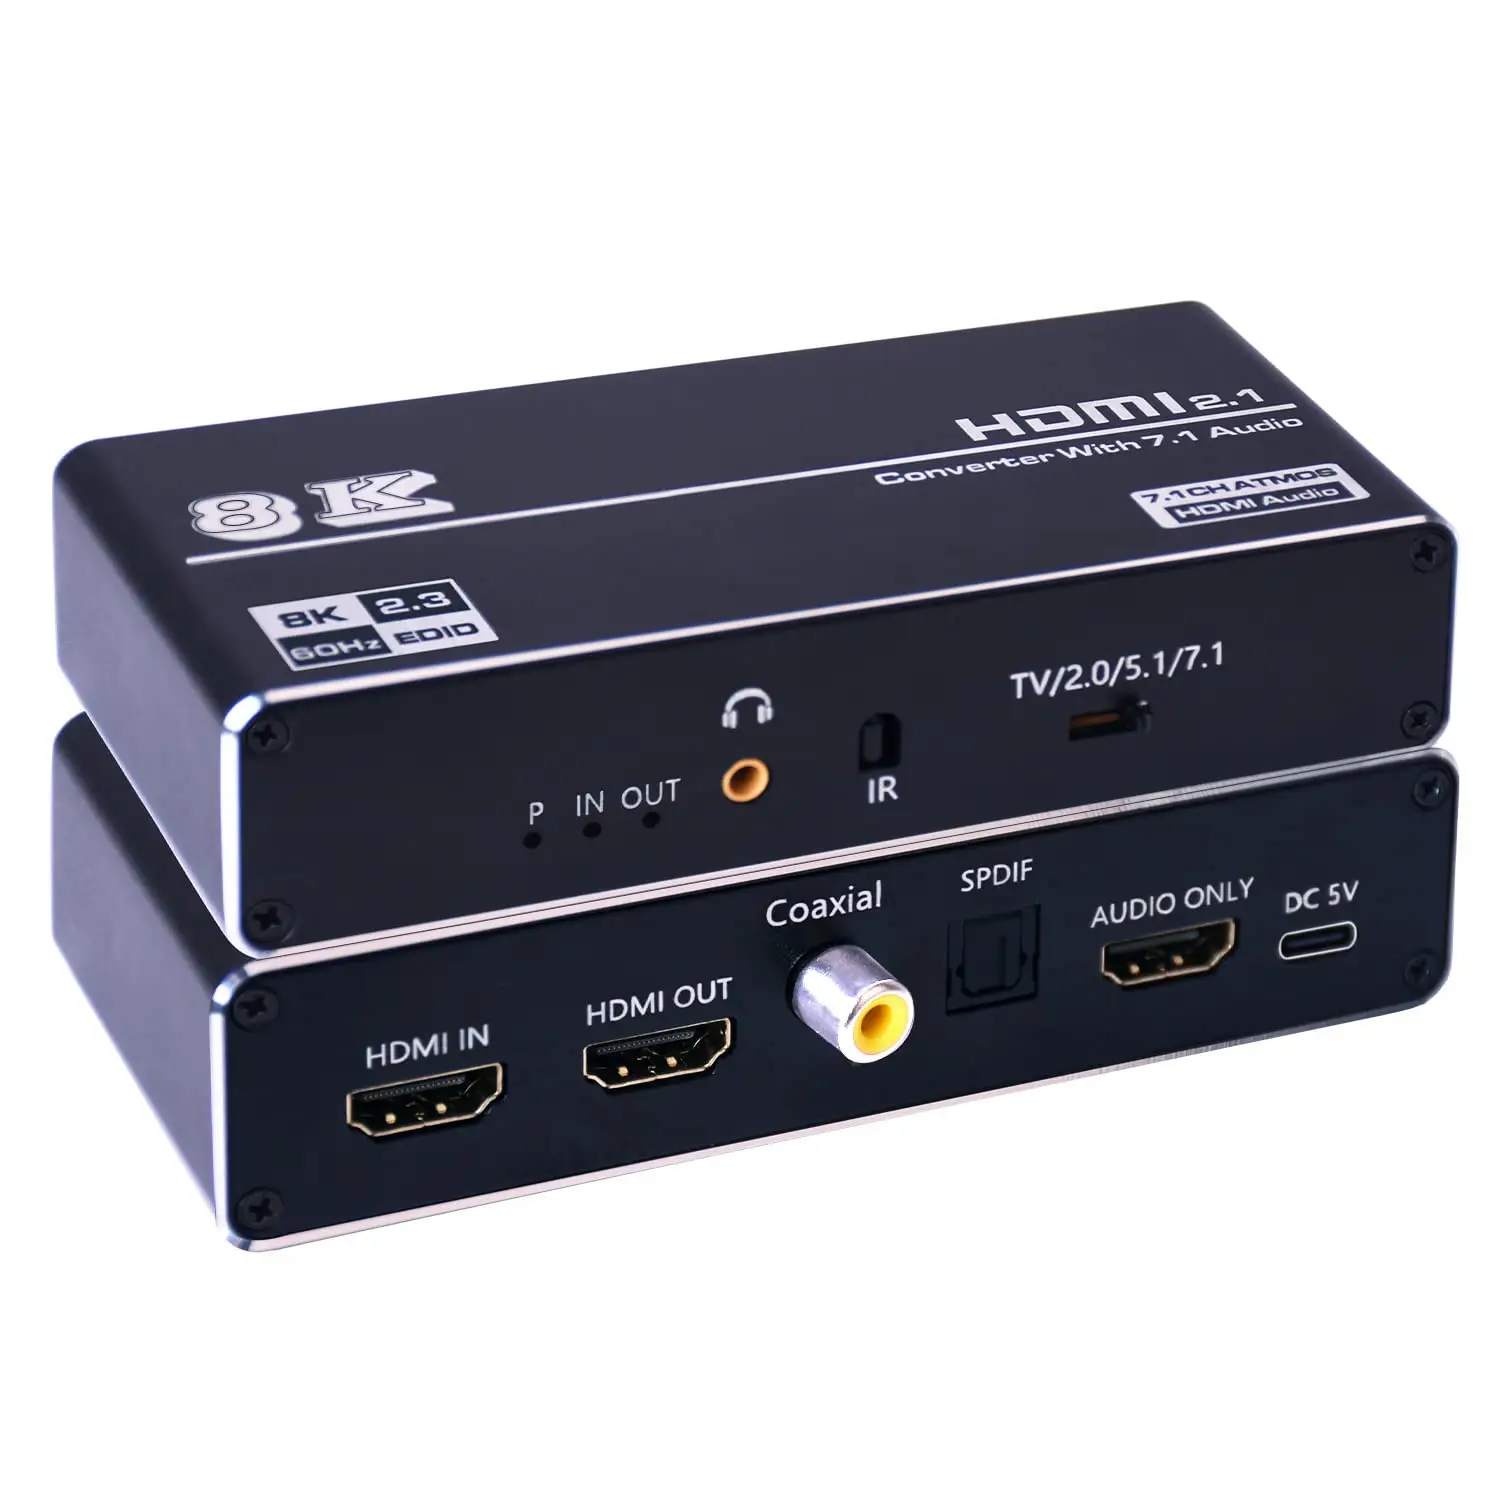 Nuevo 8K 60Hz HDMI Audio Extractor 4K 120Hz HDTV convertidor con 7.1CH SPDIF Coaxial óptico Toslink HDCP2.3 Atmos con control remoto IR